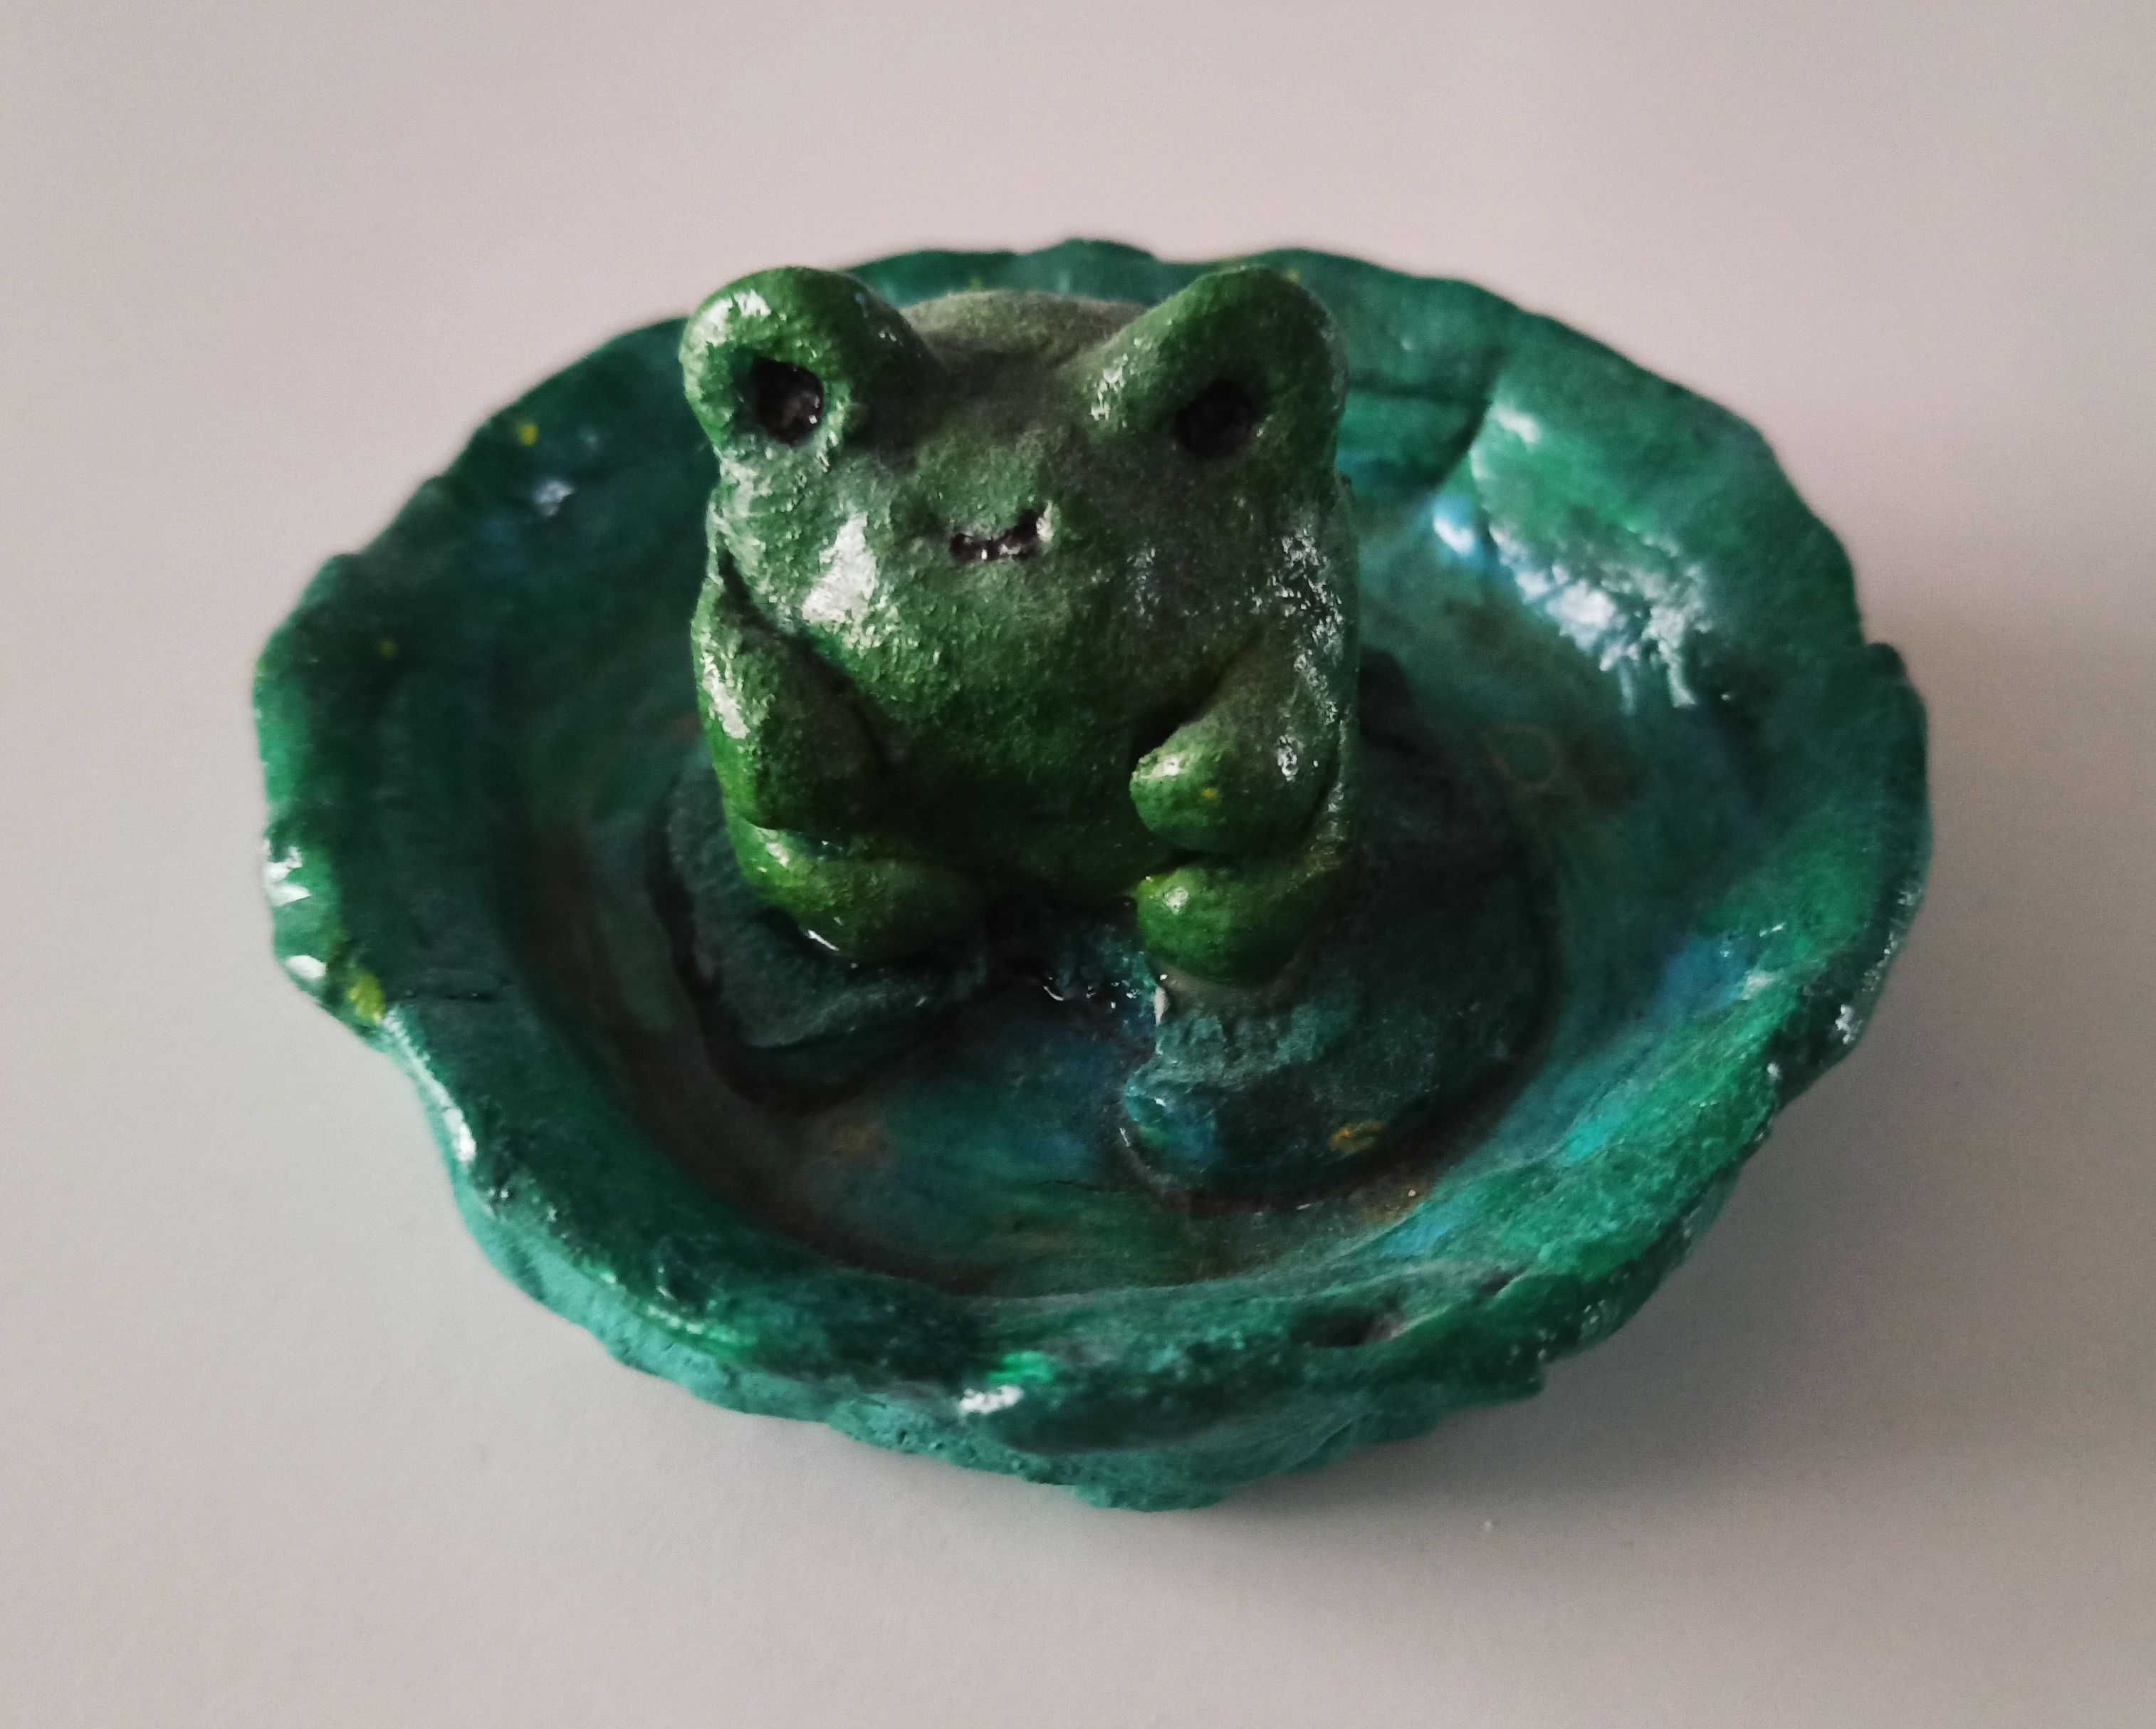 zielona żabka w stawiku - figurka dekoracyjna na biurko 9,5 cm